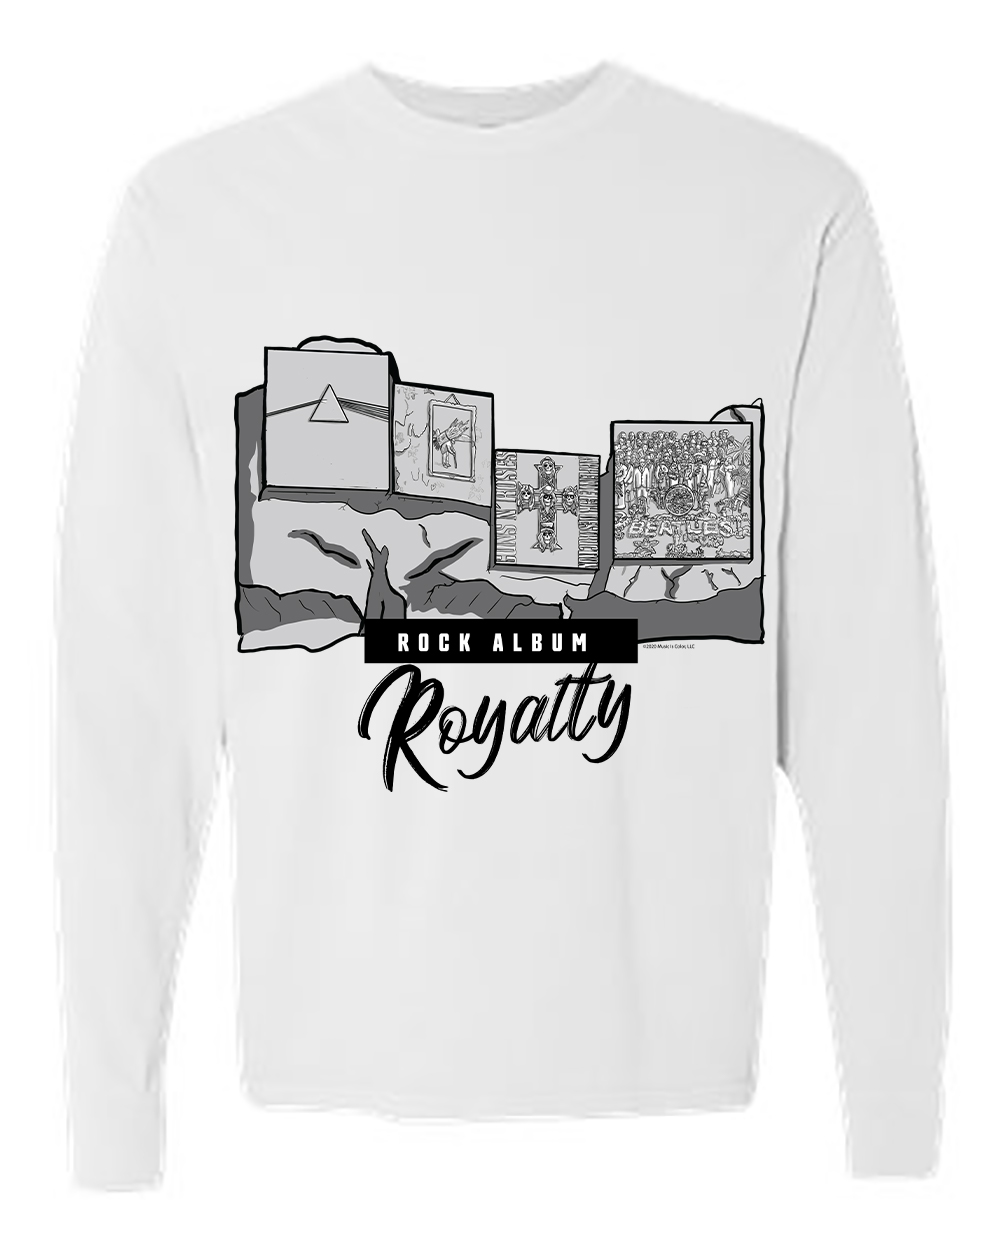 Mount Rushmore - Rock Album Royalty (White Long Sleeve Shirt)